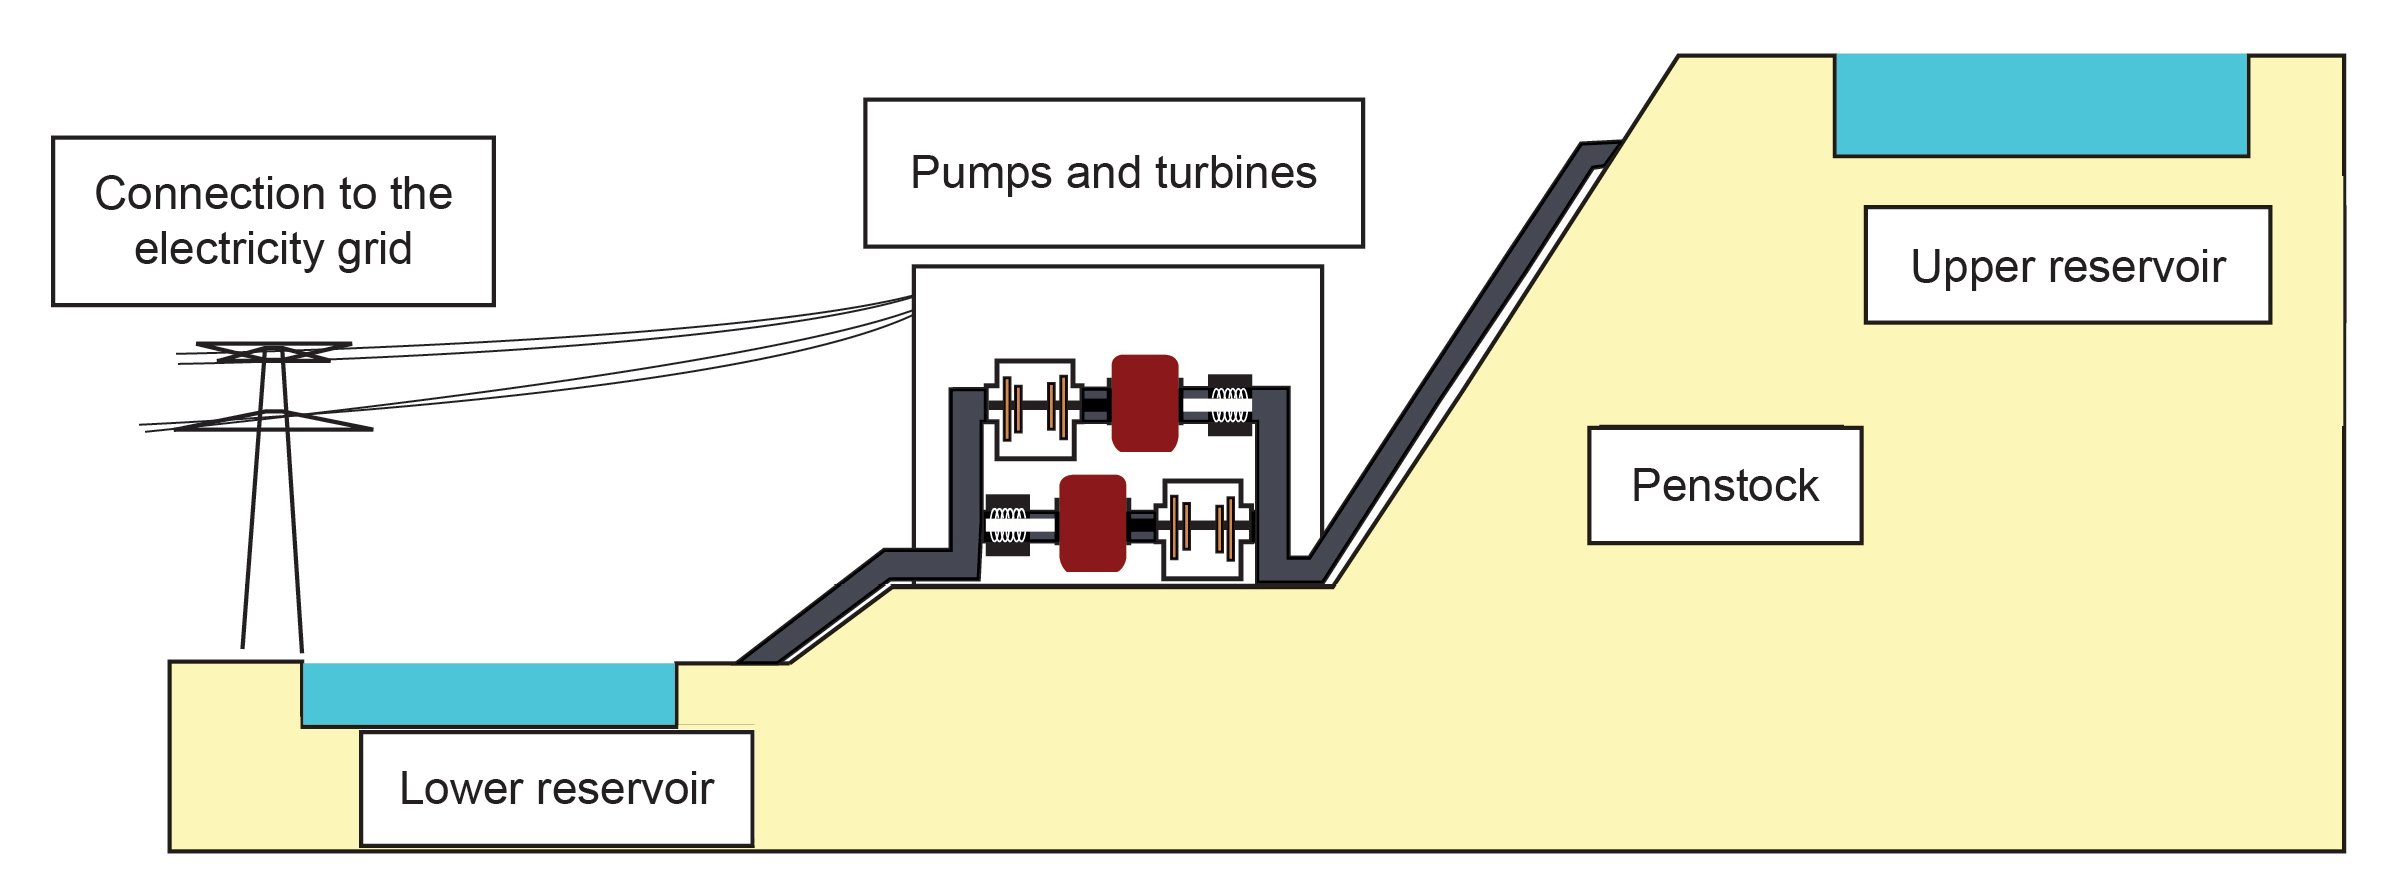 Schema explaining how Pumped-Storage Power Plants work